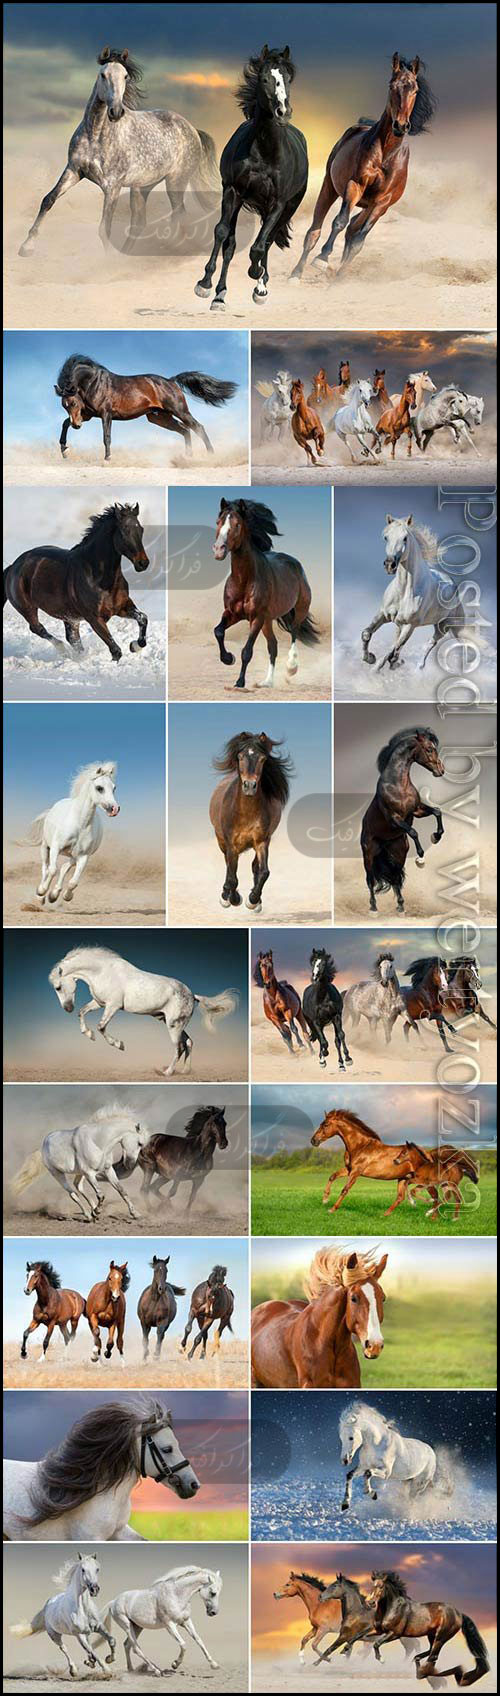 دانلود تصاویر استوک اسب - Horse Stock Photos